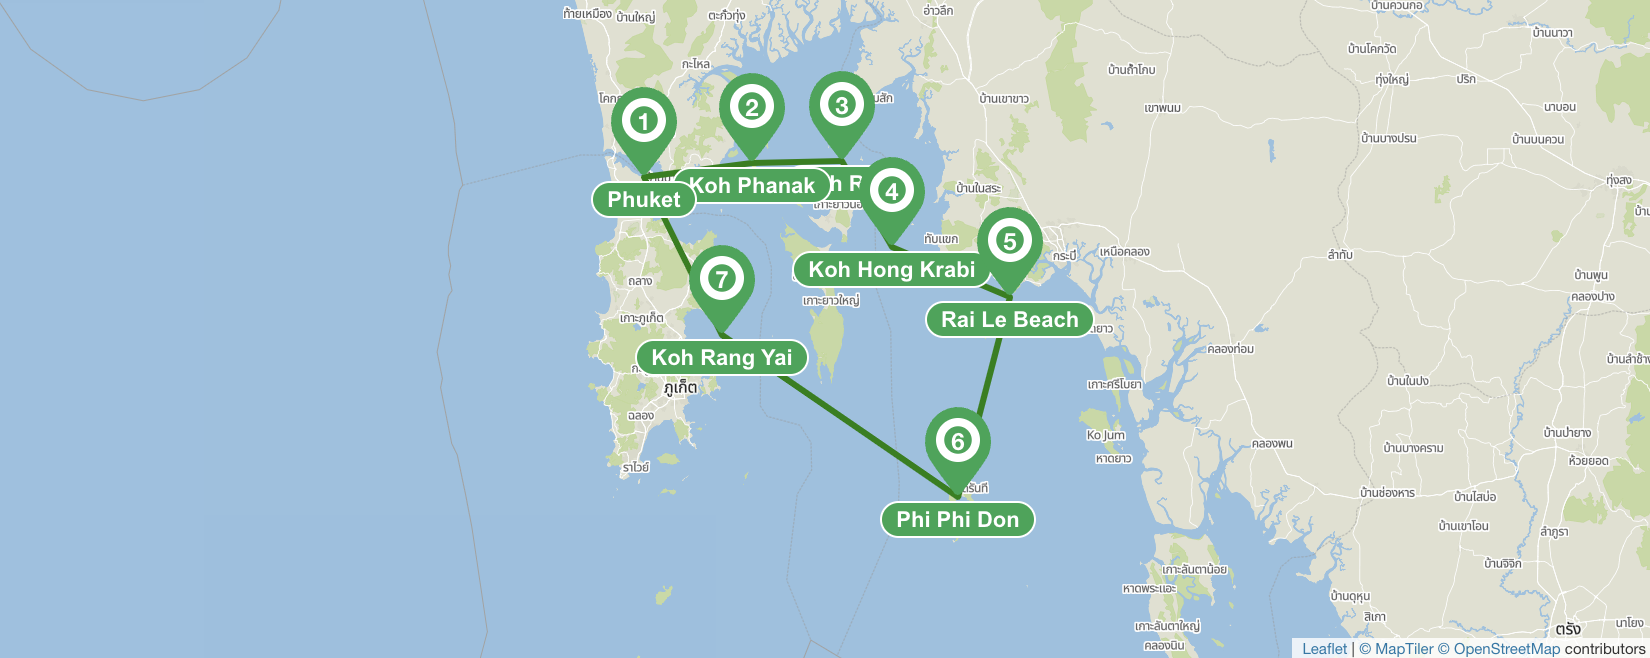 Itinéraire de navigation à Phuket - 7 jours